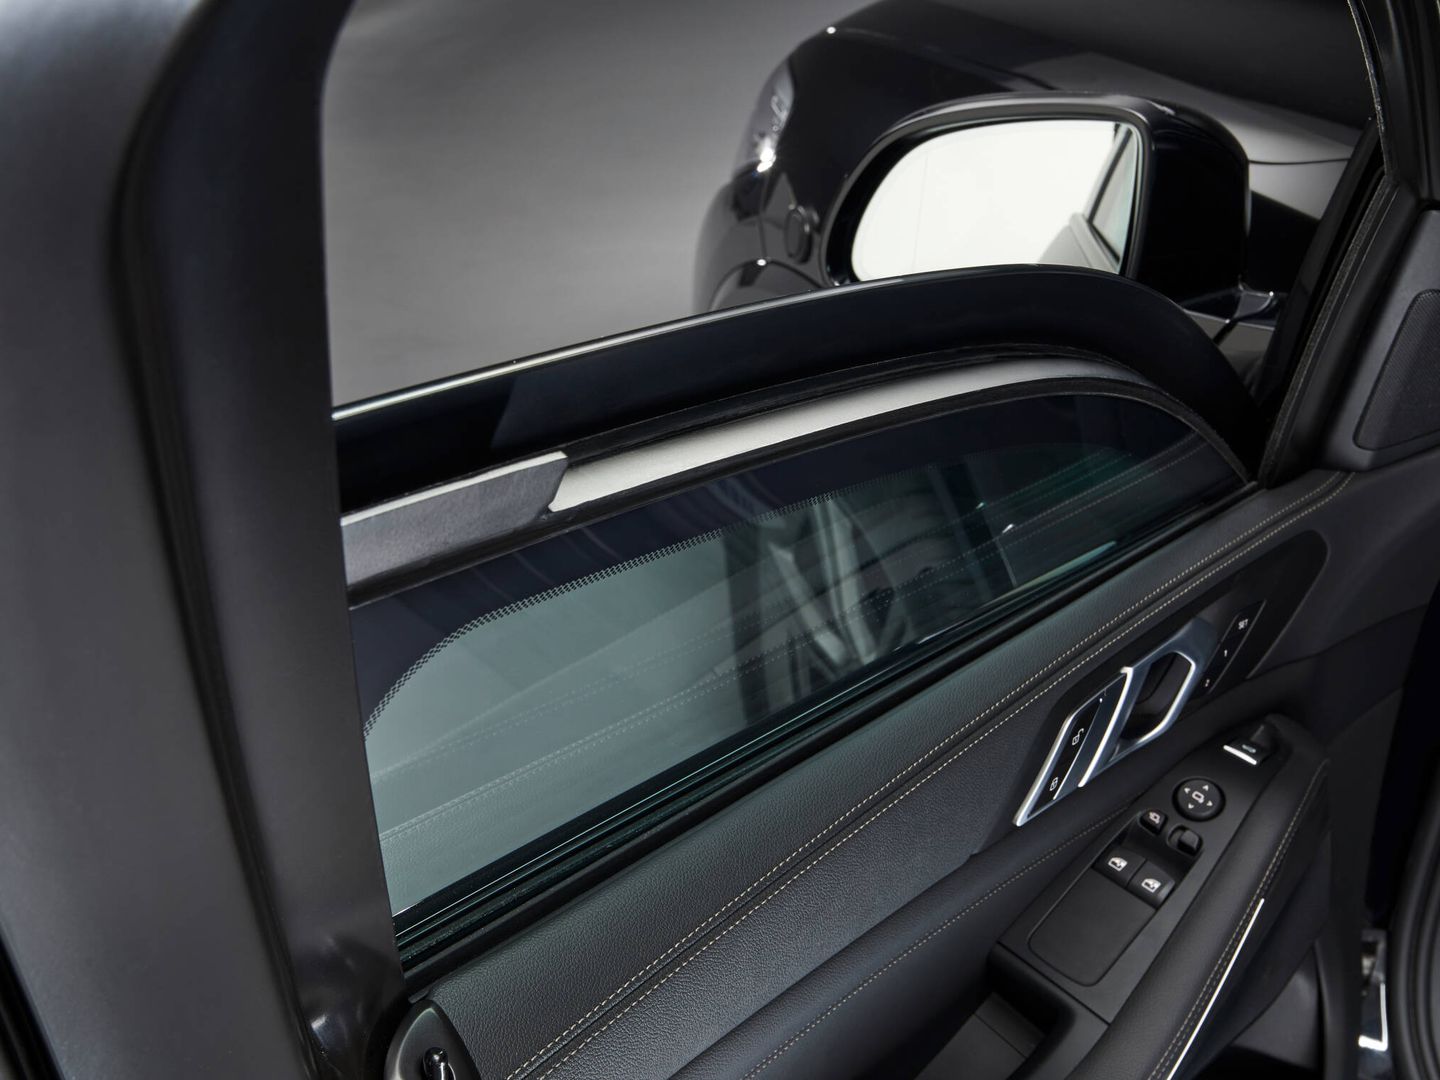 Los cristales de seguridad de los X5 blindados tienen unos 30 milímetros de espesor. (BMW)